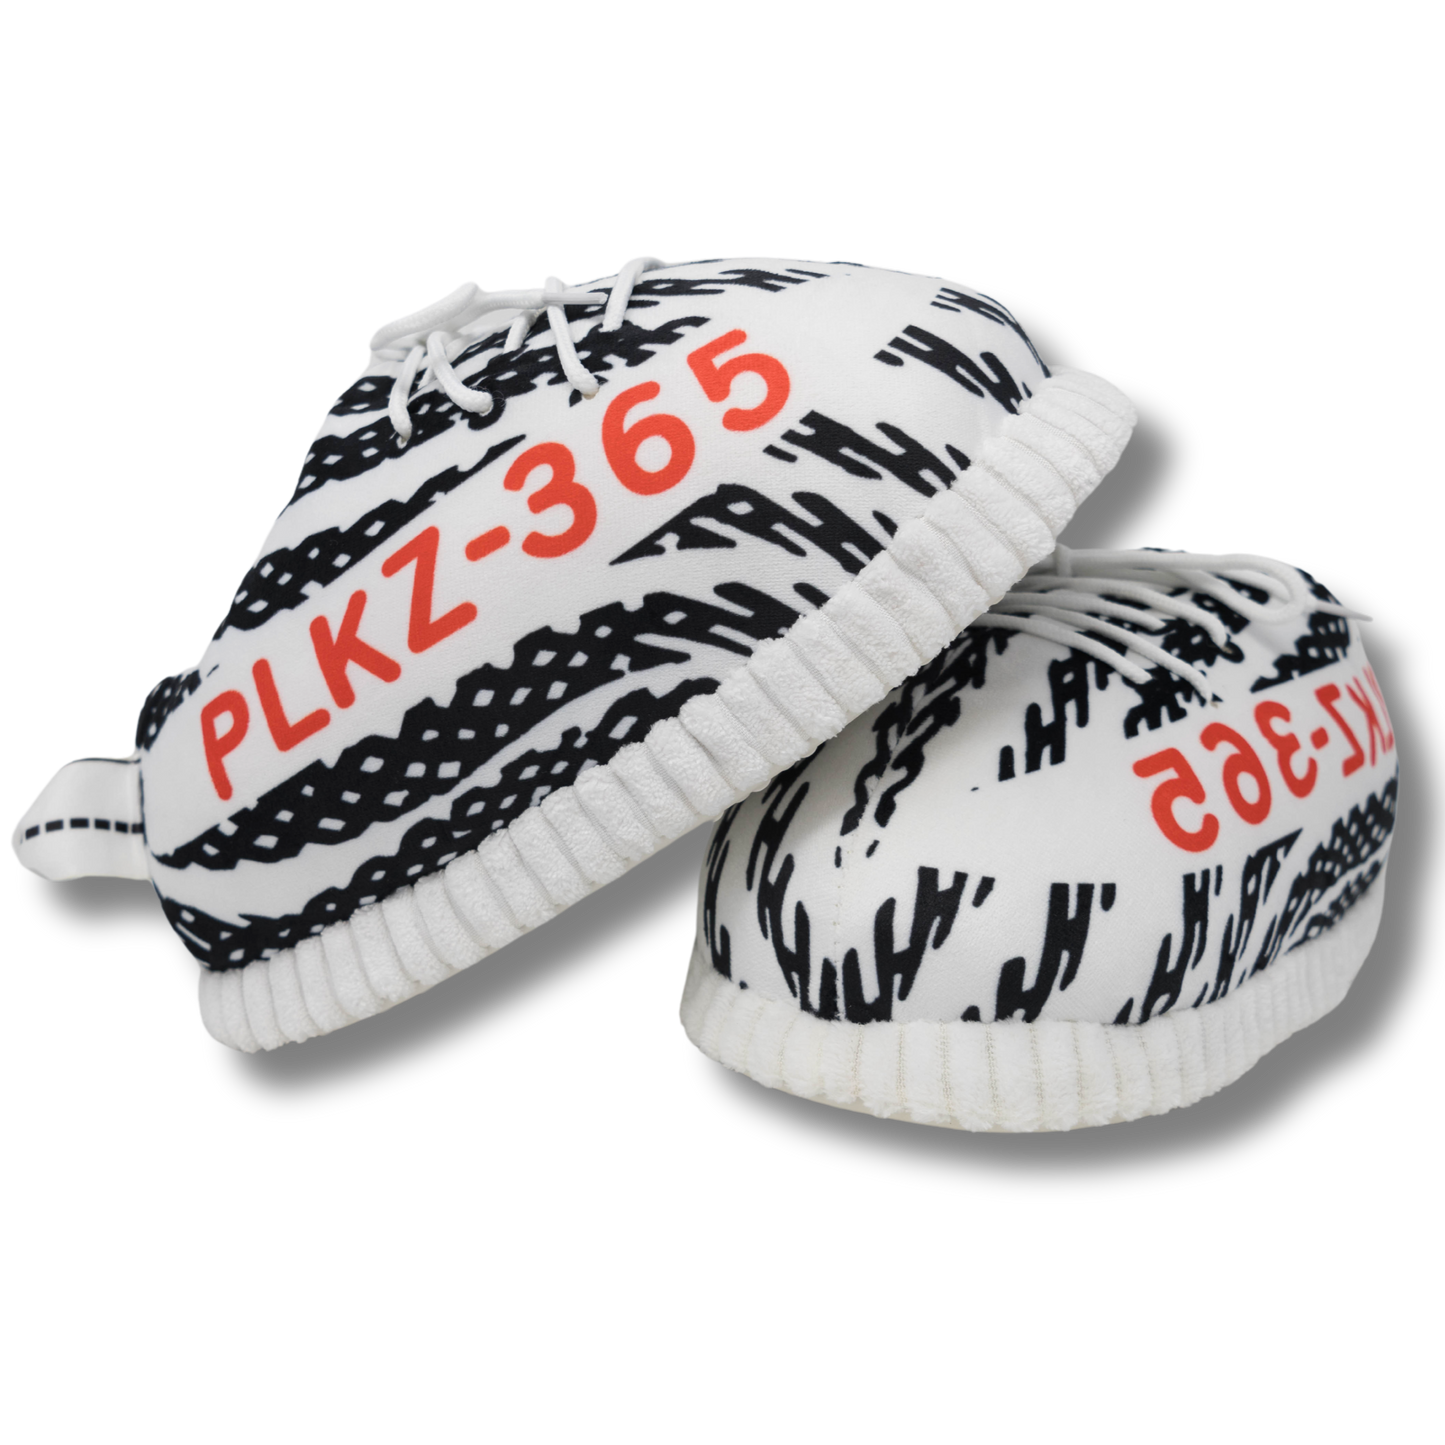 Plush Kickz PLKZ 365's - Zebra's